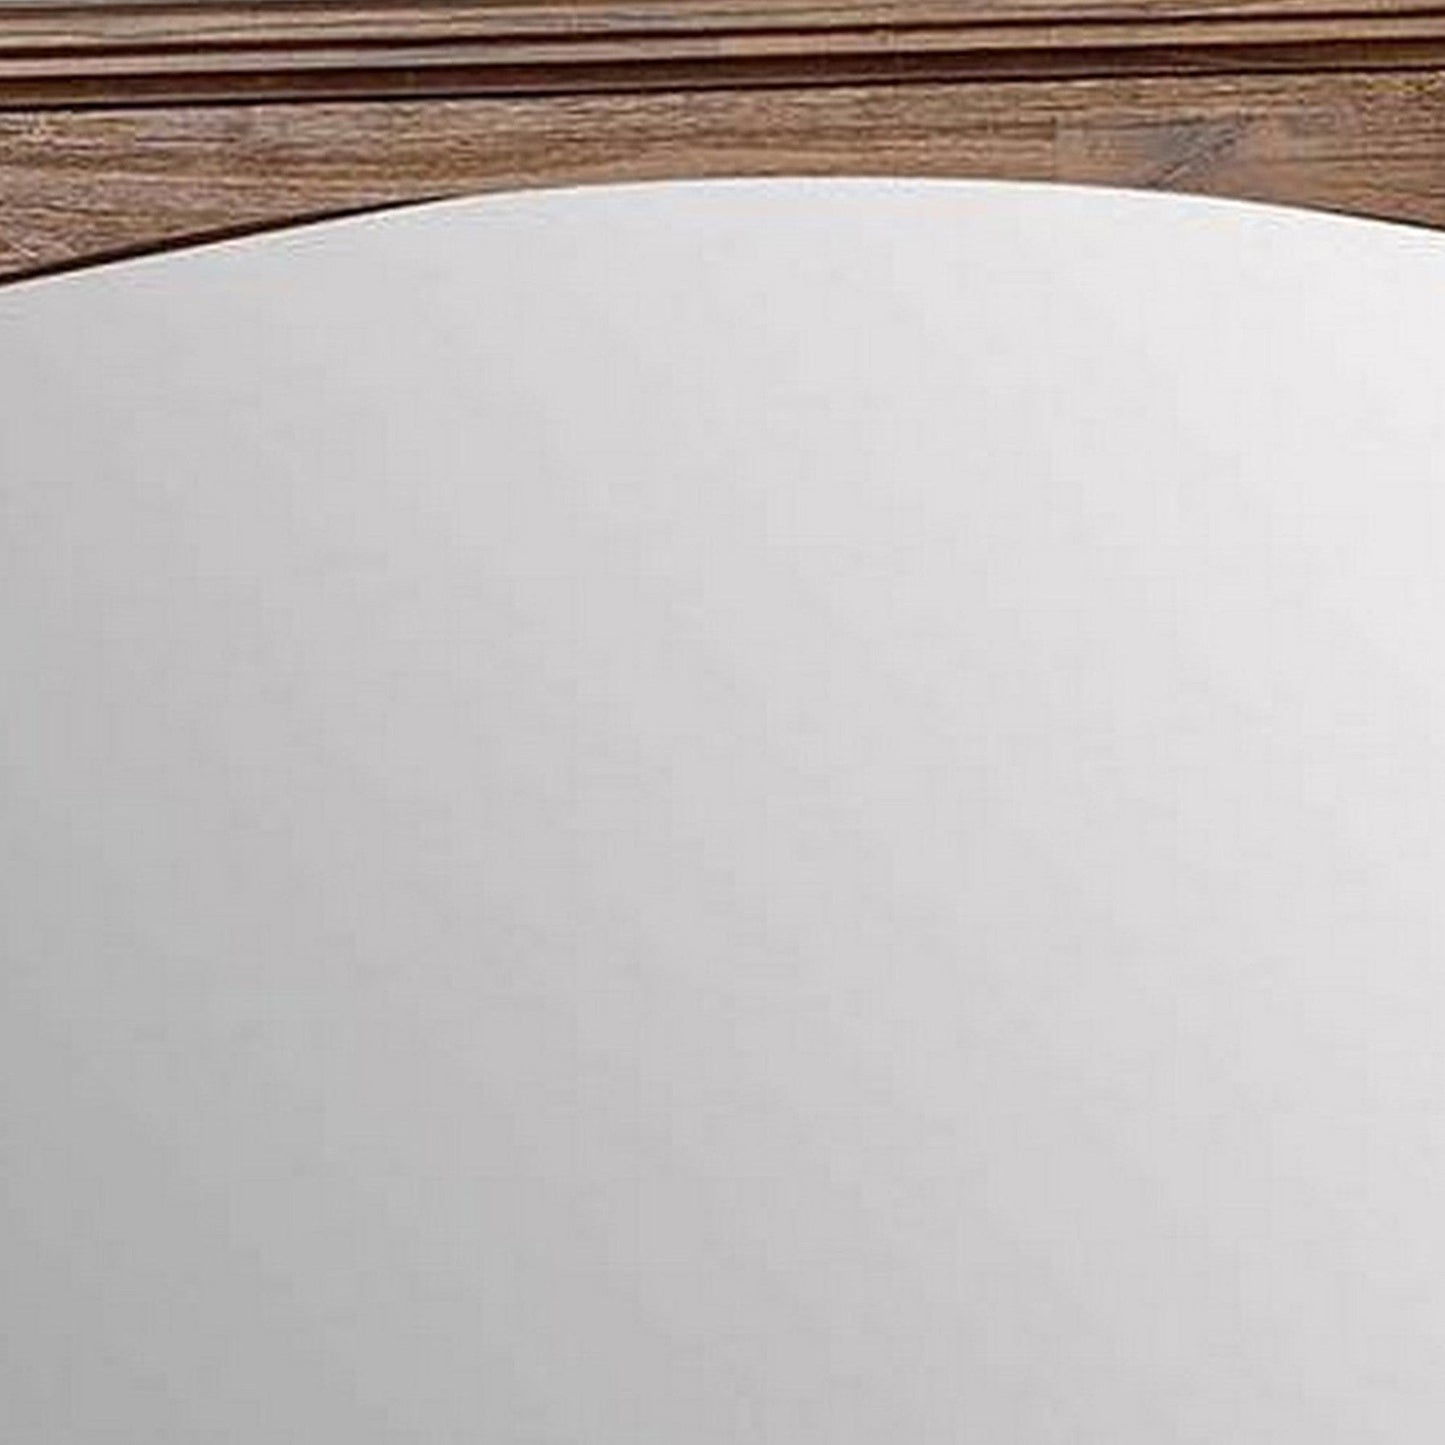 Benzara 37" Dark Oak Transitional Style Wooden Frame Mirror